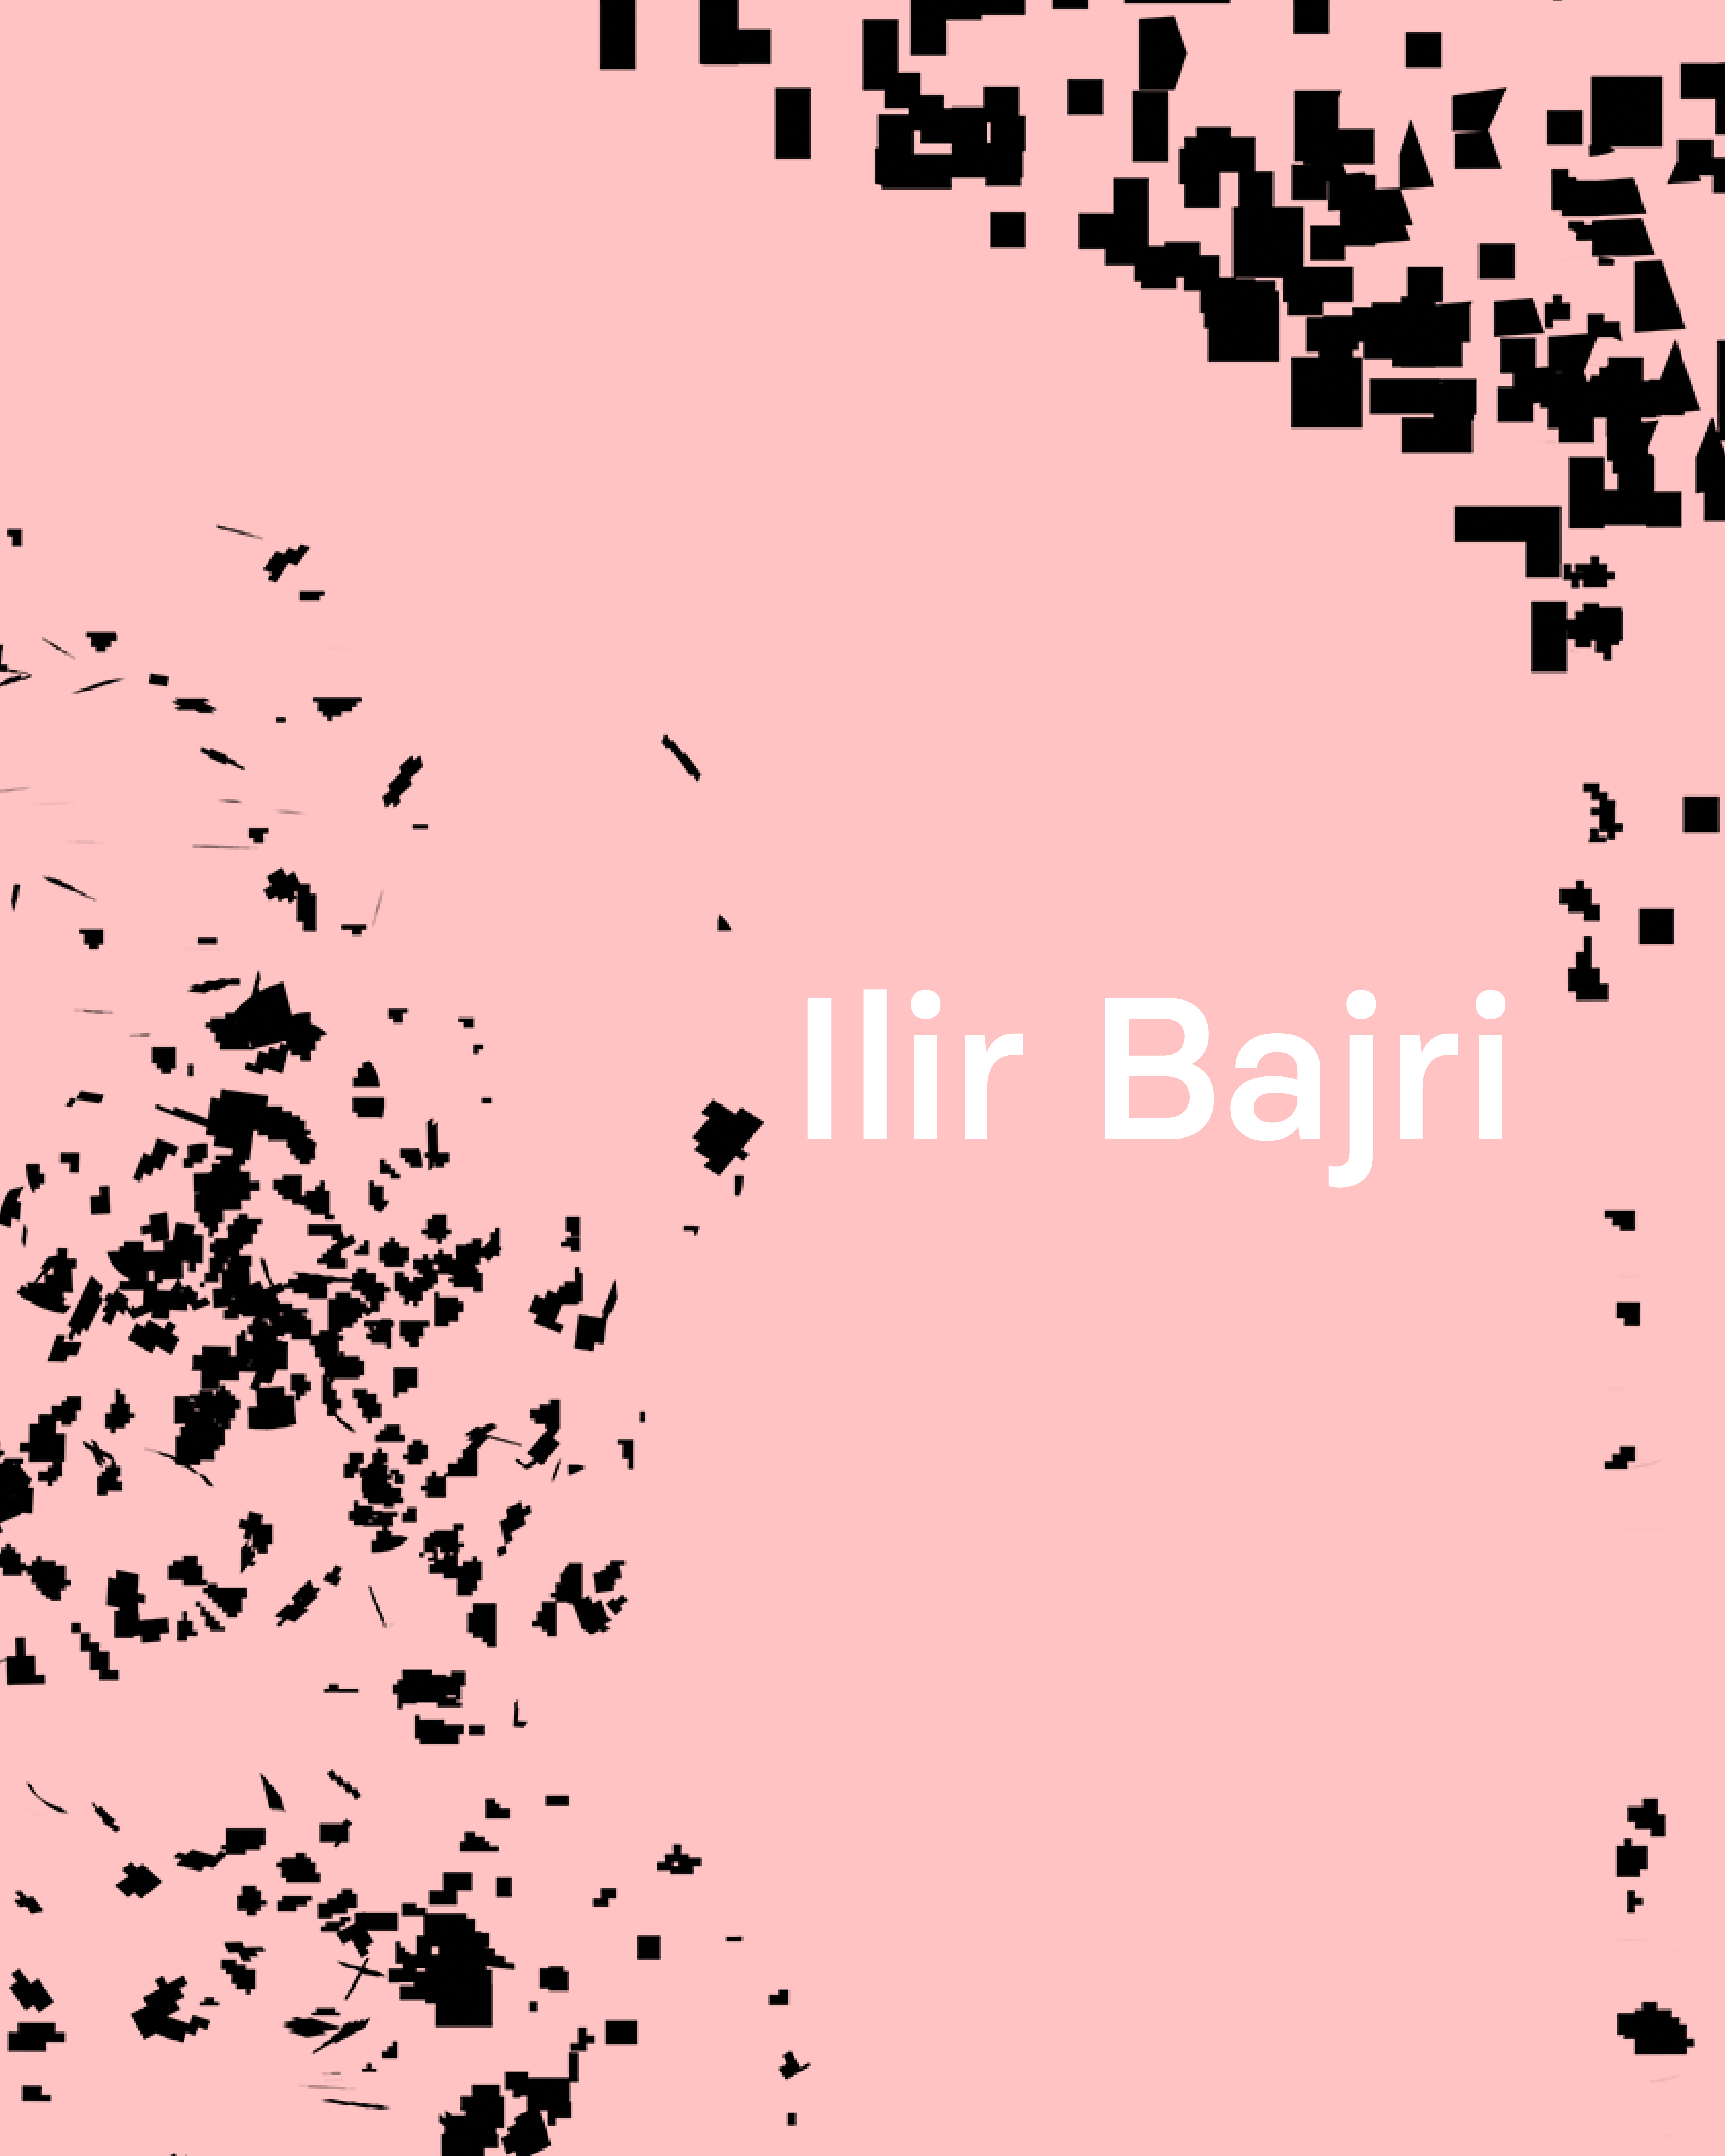 Ilir Bajri